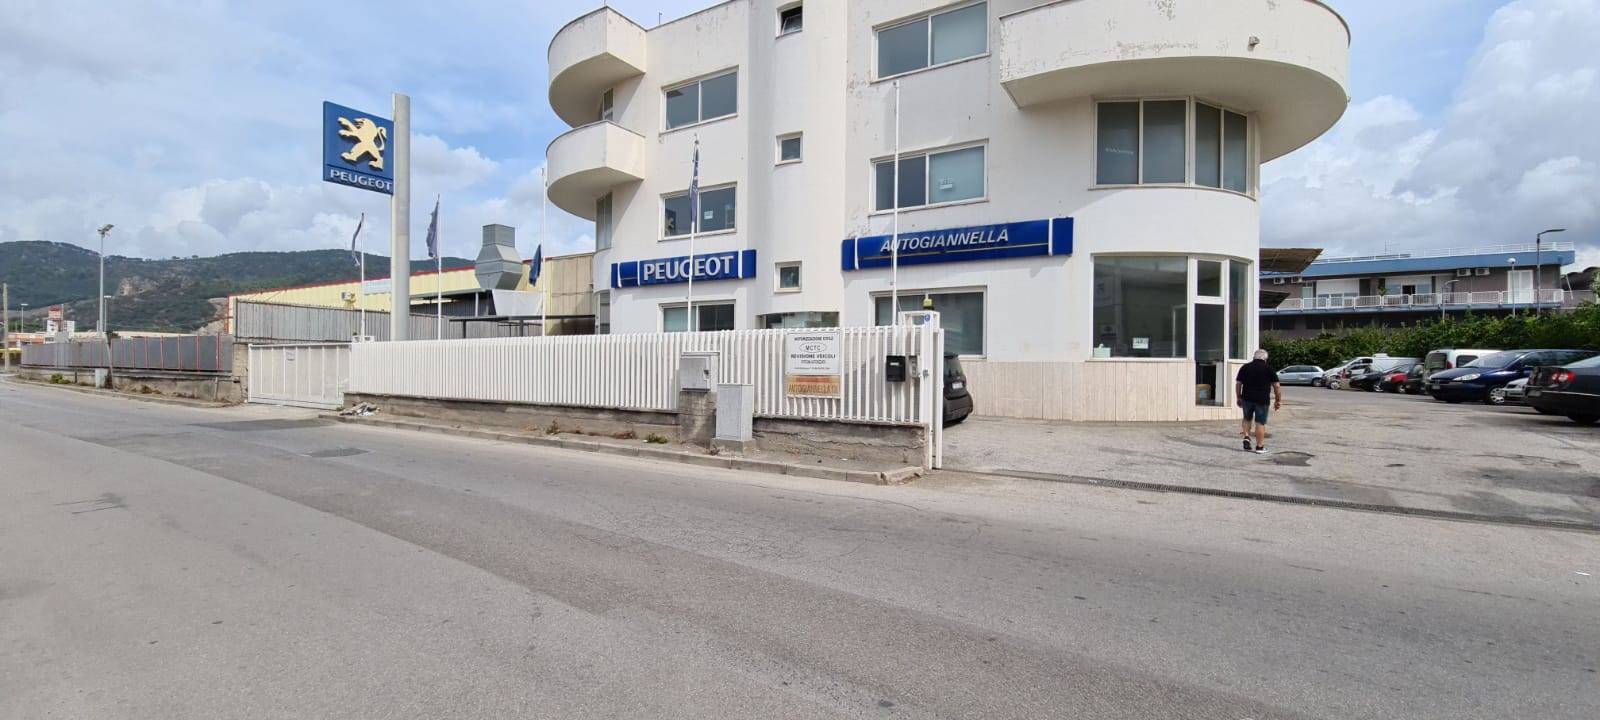 Immobile Commerciale in affitto a Salerno, 9999 locali, zona Industriale, prezzo € 4.900 | PortaleAgenzieImmobiliari.it